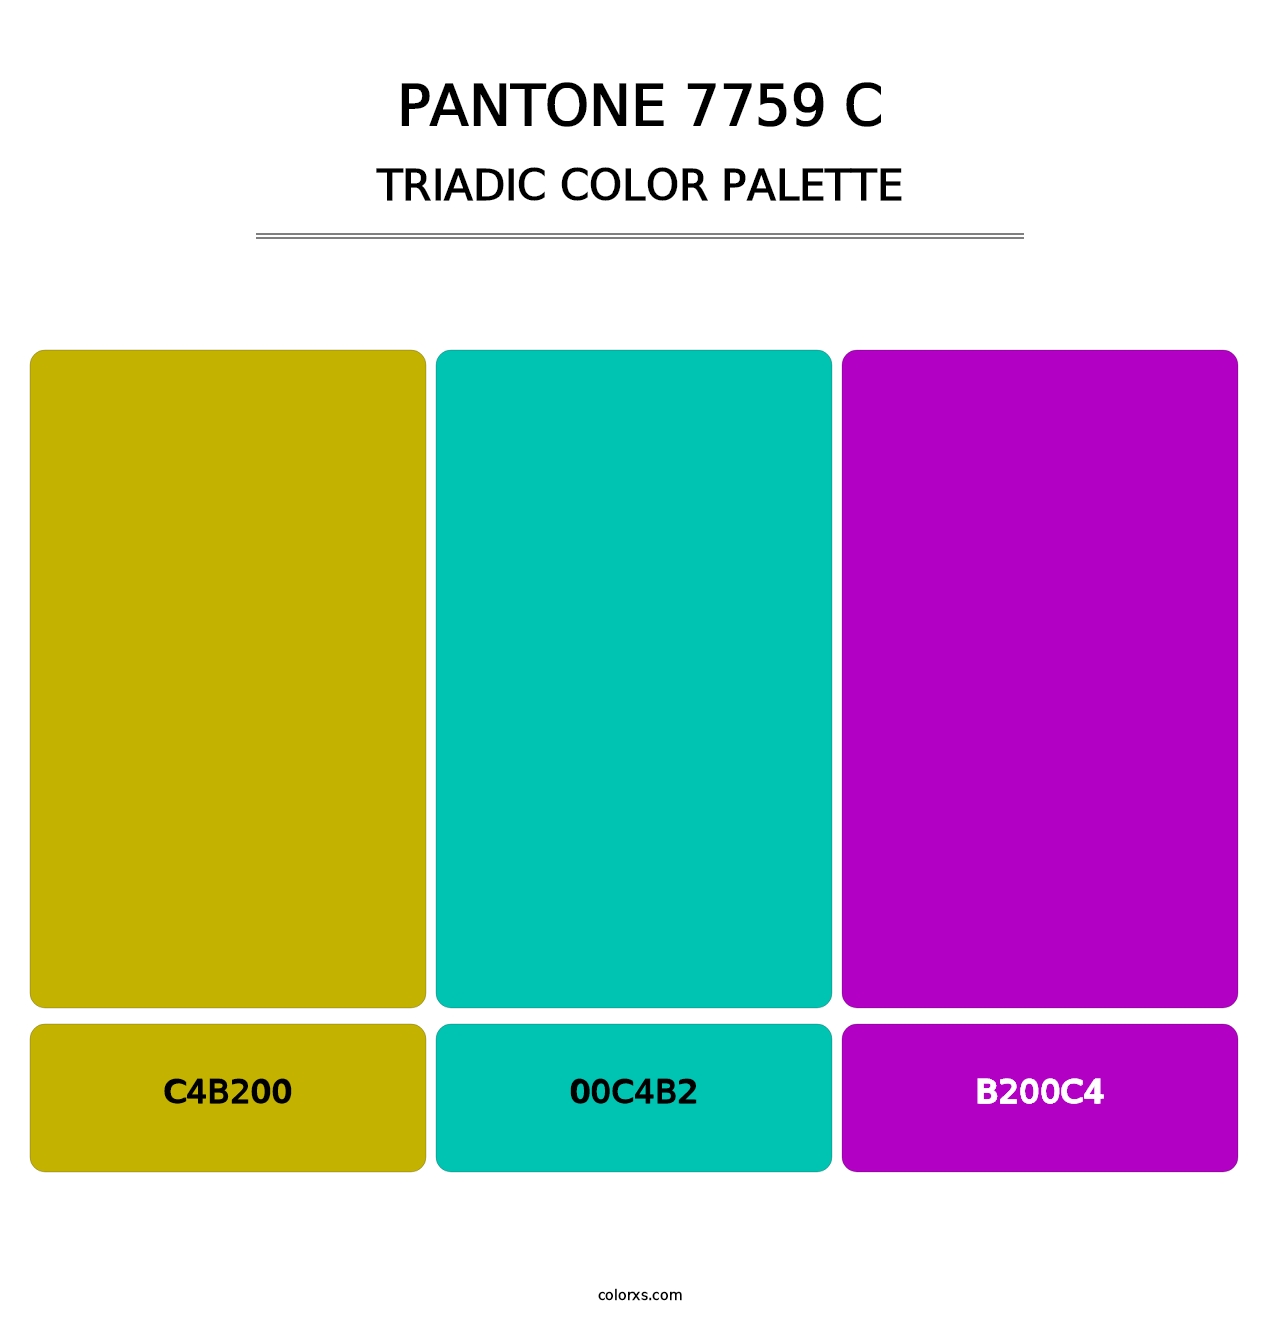 PANTONE 7759 C - Triadic Color Palette